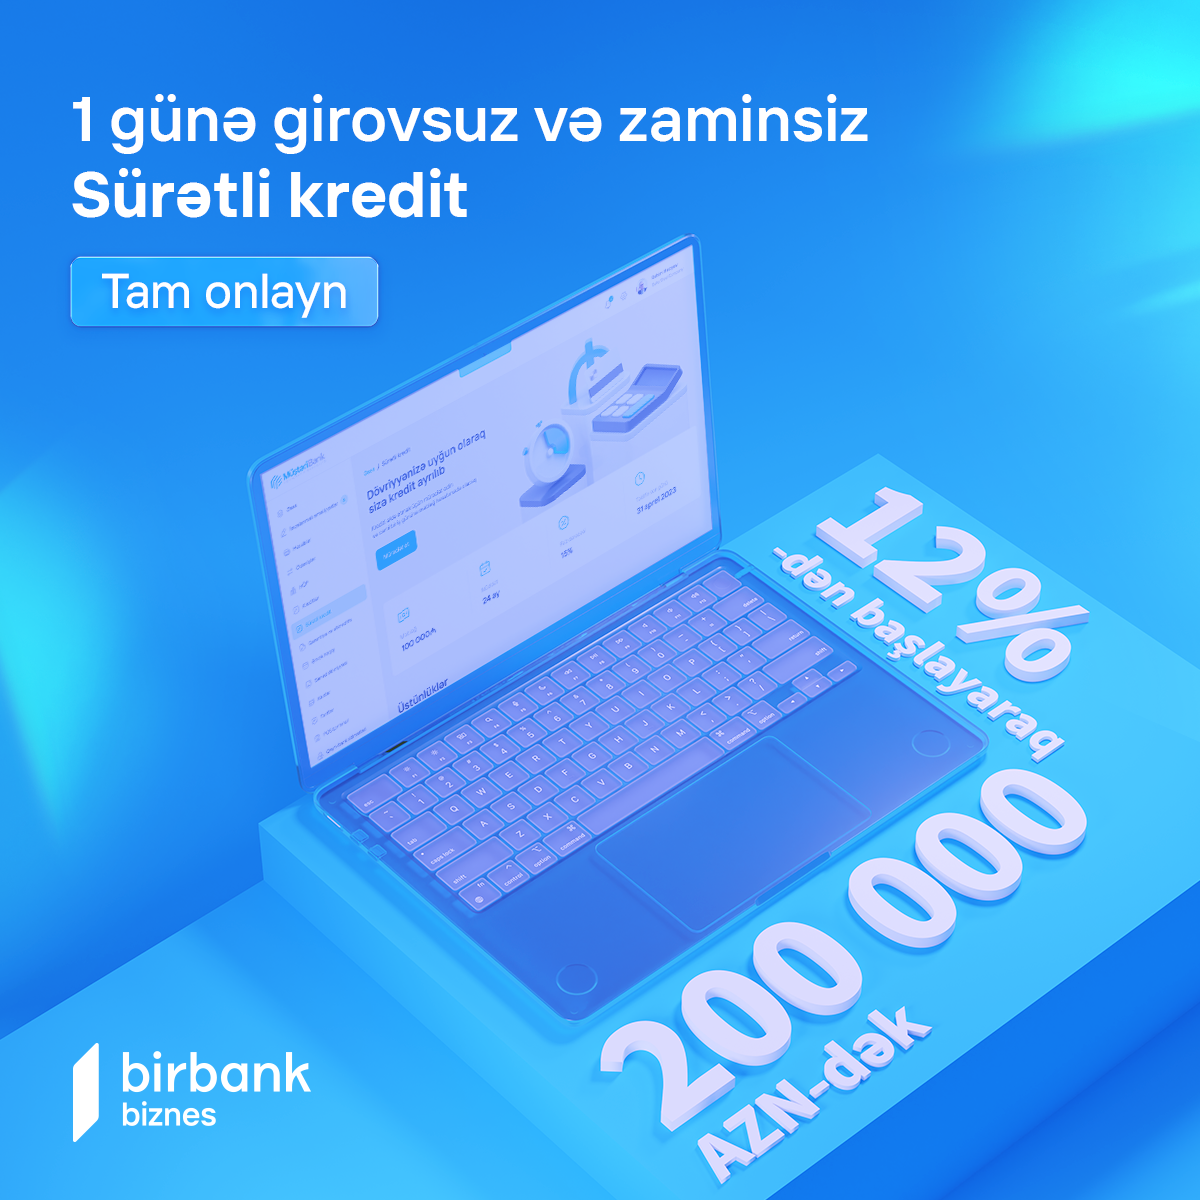 Birbank Biznes-də yeni “Sürətli kredit" məhsulu istifadəyə verildi